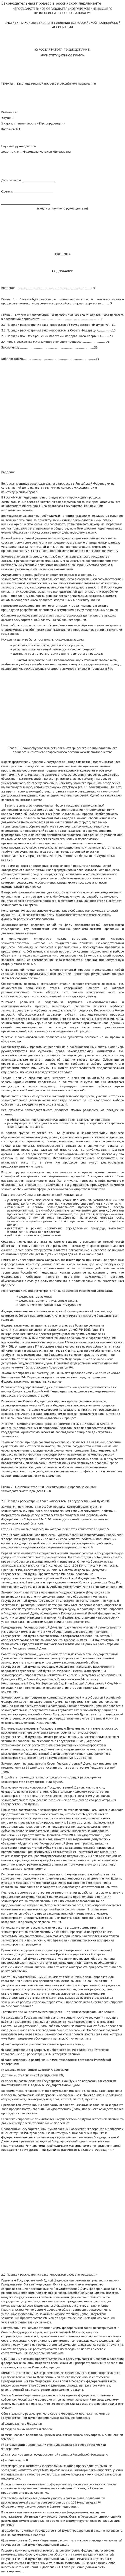 Законодательный процесс в российском парламенте. 2